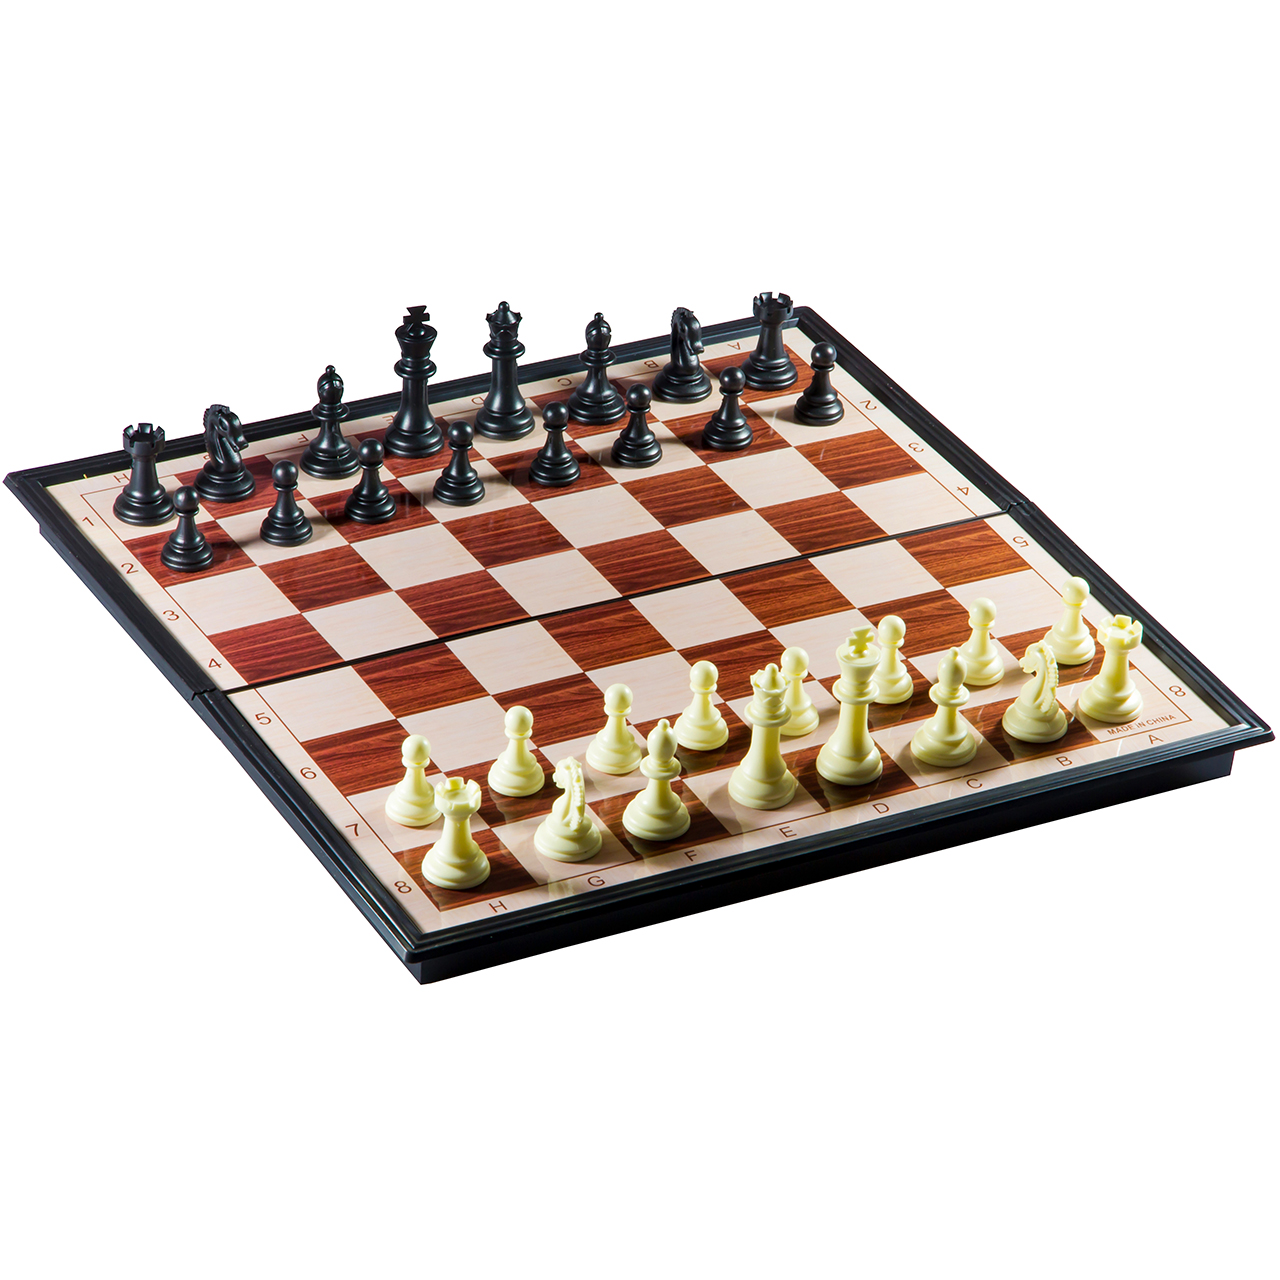 شطرنج آهنربایی آئو چینگ برینز چس مدل No.8508